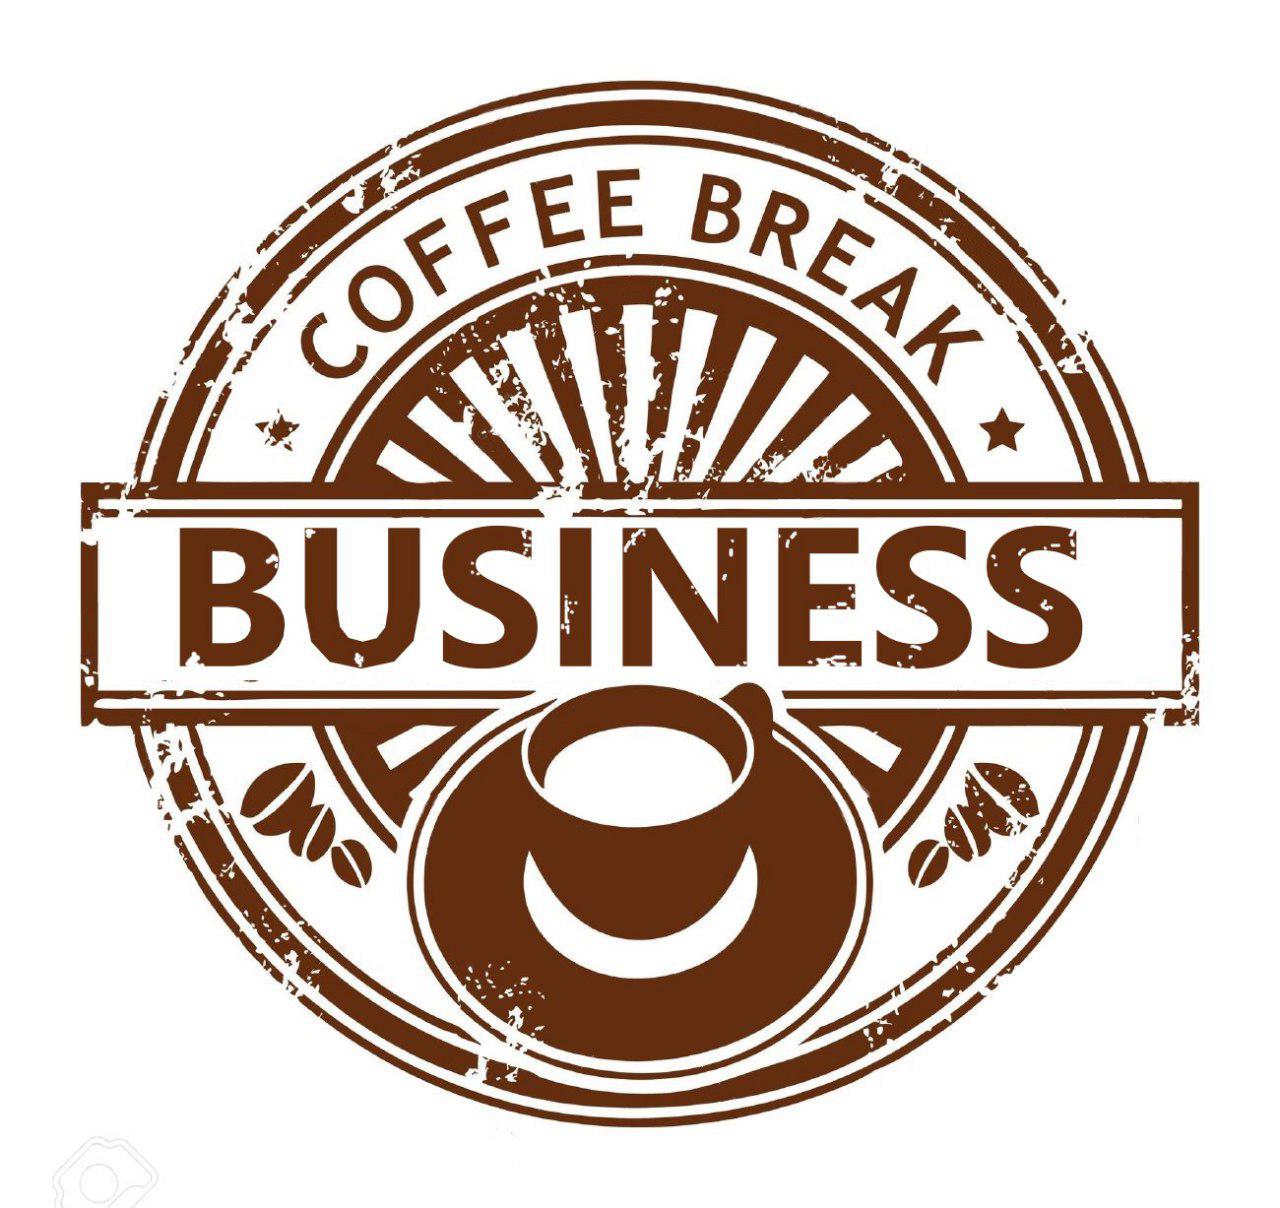 Business Coffee Break